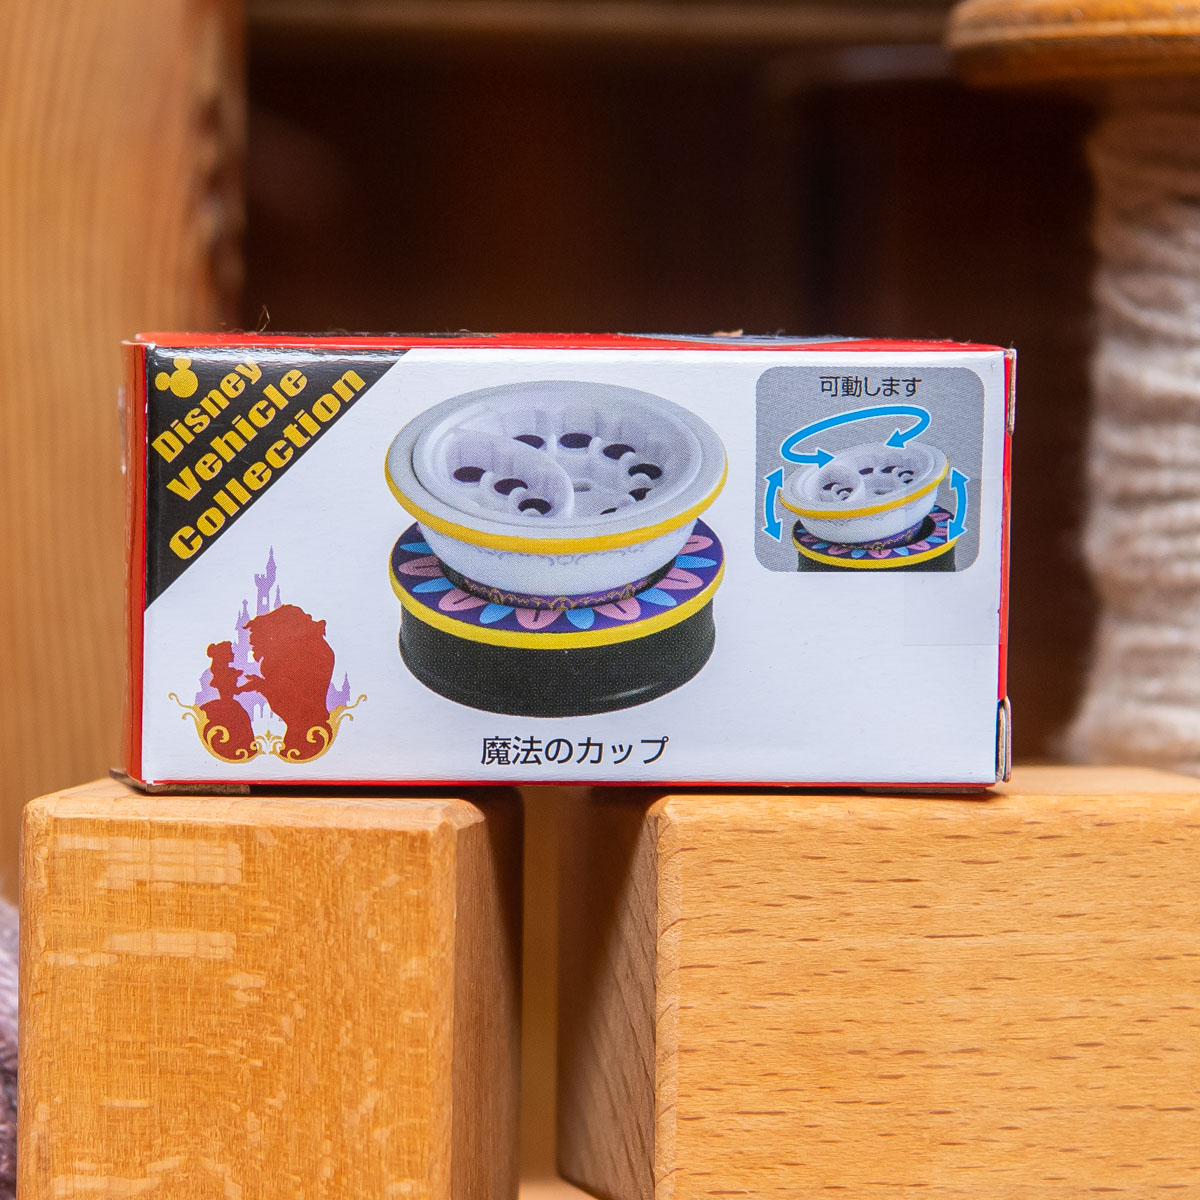 真愛日本 限定樂園小車 美女與野獸 魔法轉盤 玩具車 模型車 收藏 東京迪士尼樂園帶回